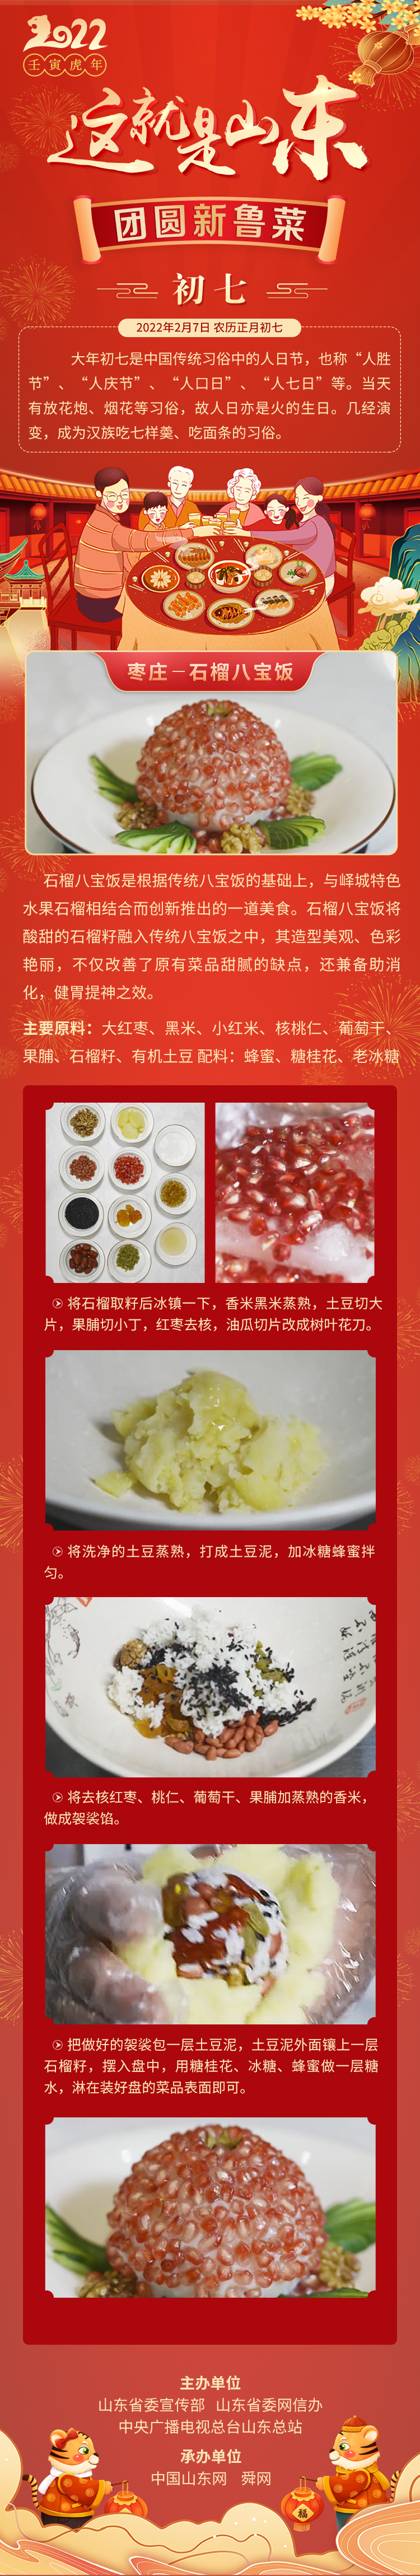 这就是山东·团圆新鲁菜——枣庄-石榴八宝饭